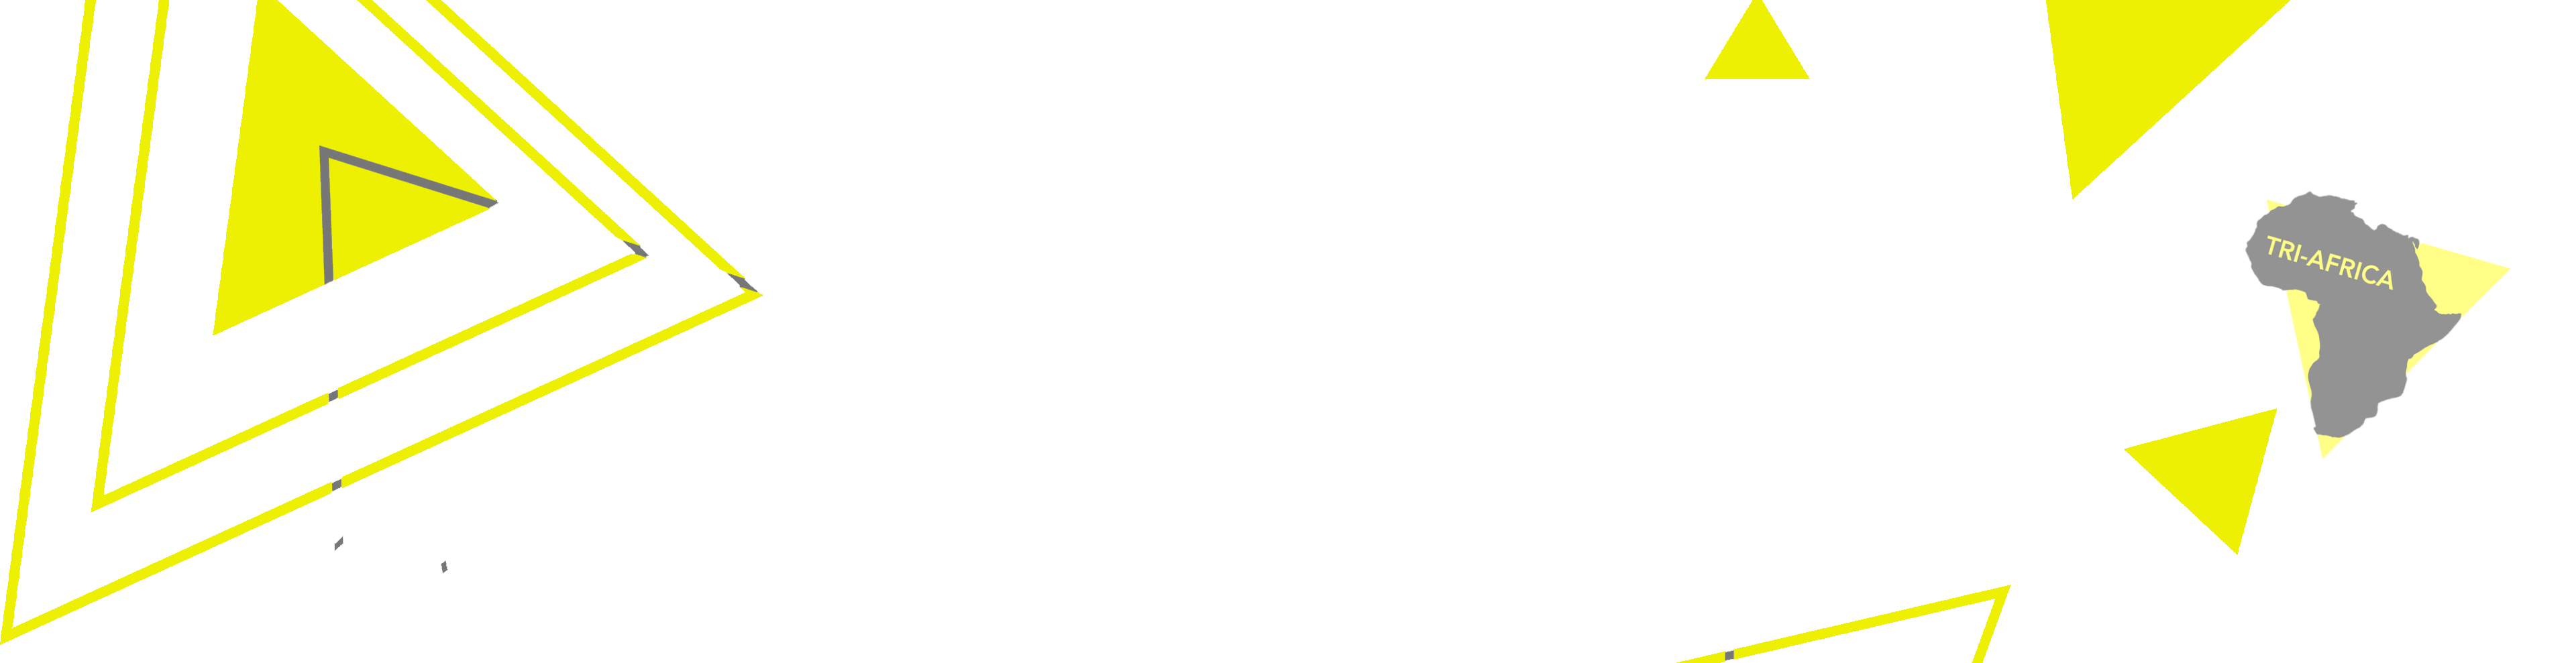 Sprayground brand top image